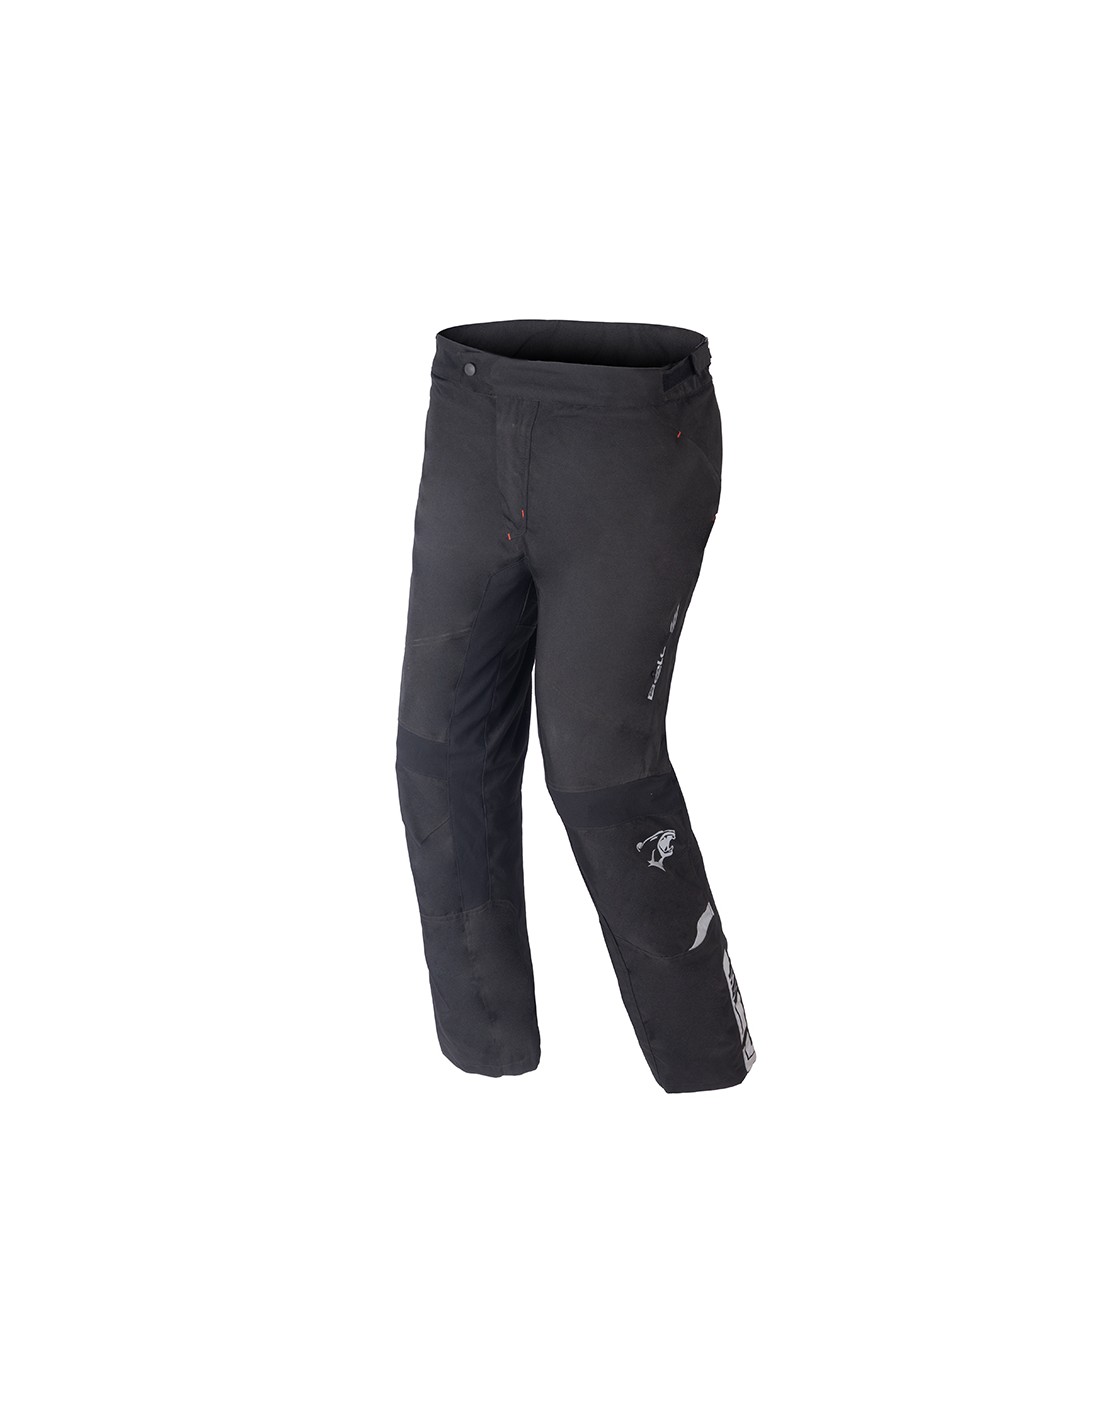 A-PRO Pantalones de moto impermeable textil Cordura Negro Talla 30